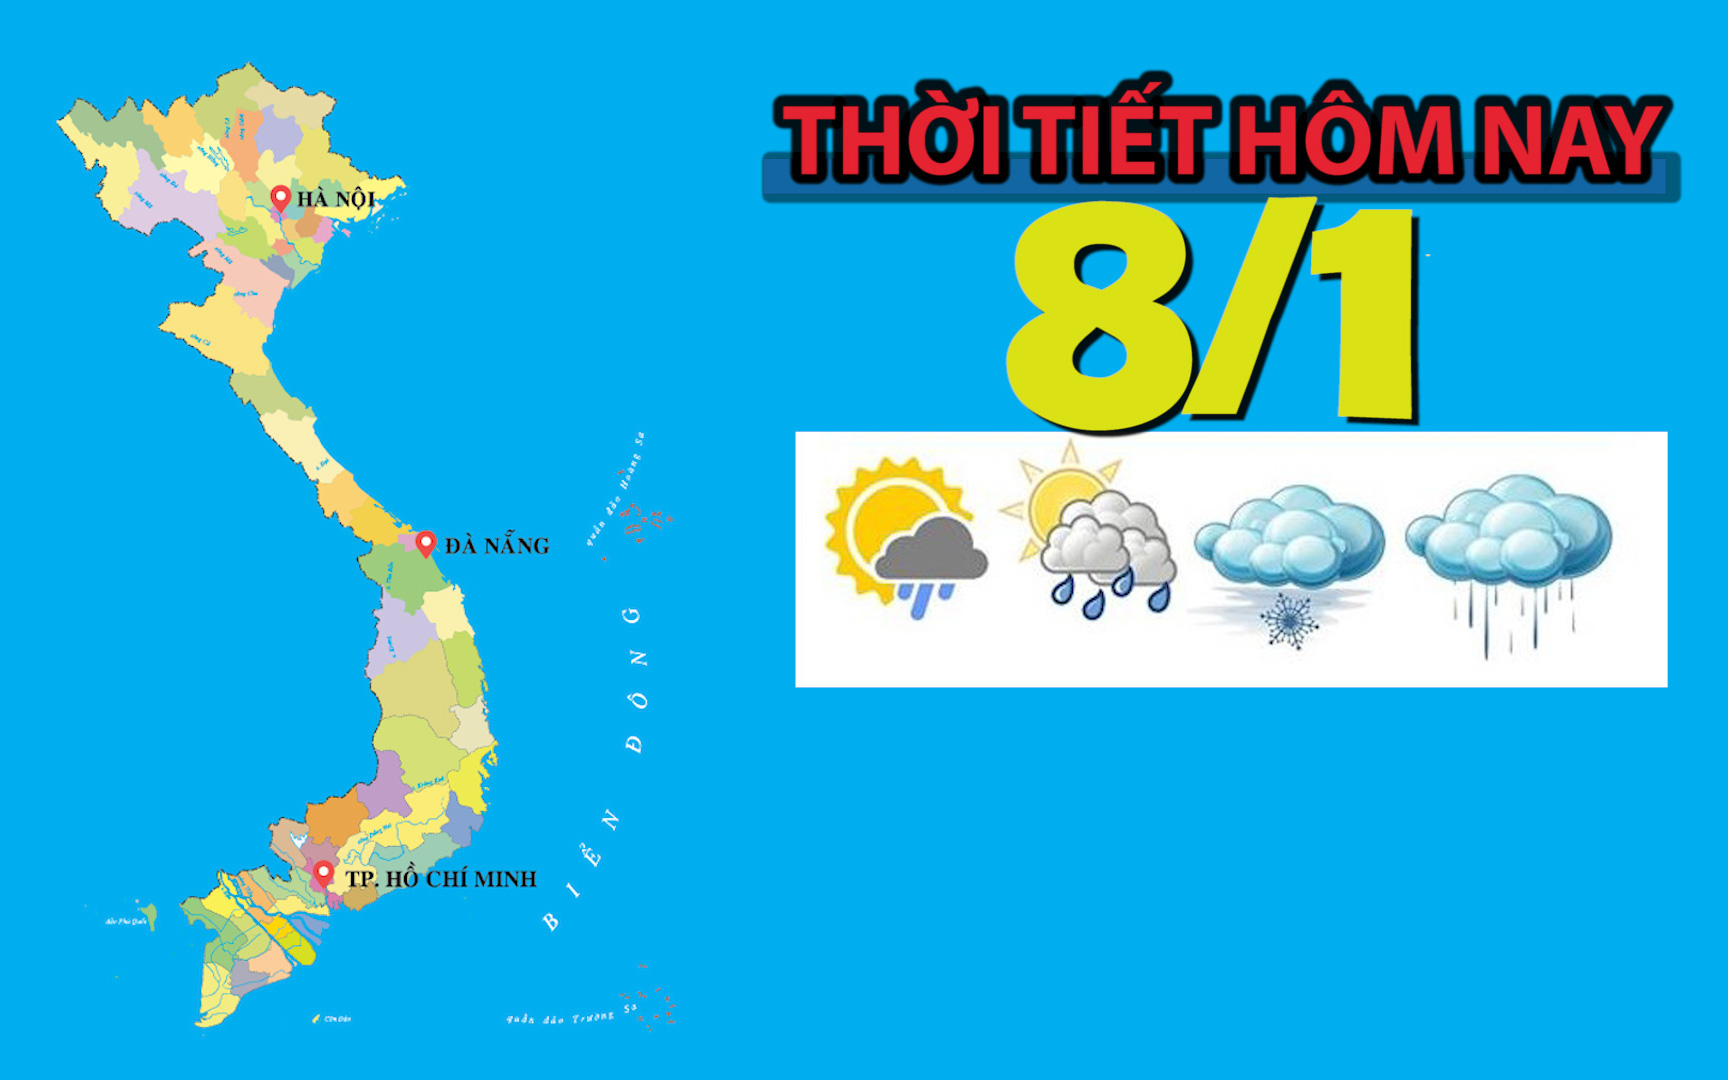 Thời tiết hôm nay 8/1: Hà Nội có mưa vài nơi, nhiệt độ cao nhất 24 độ C